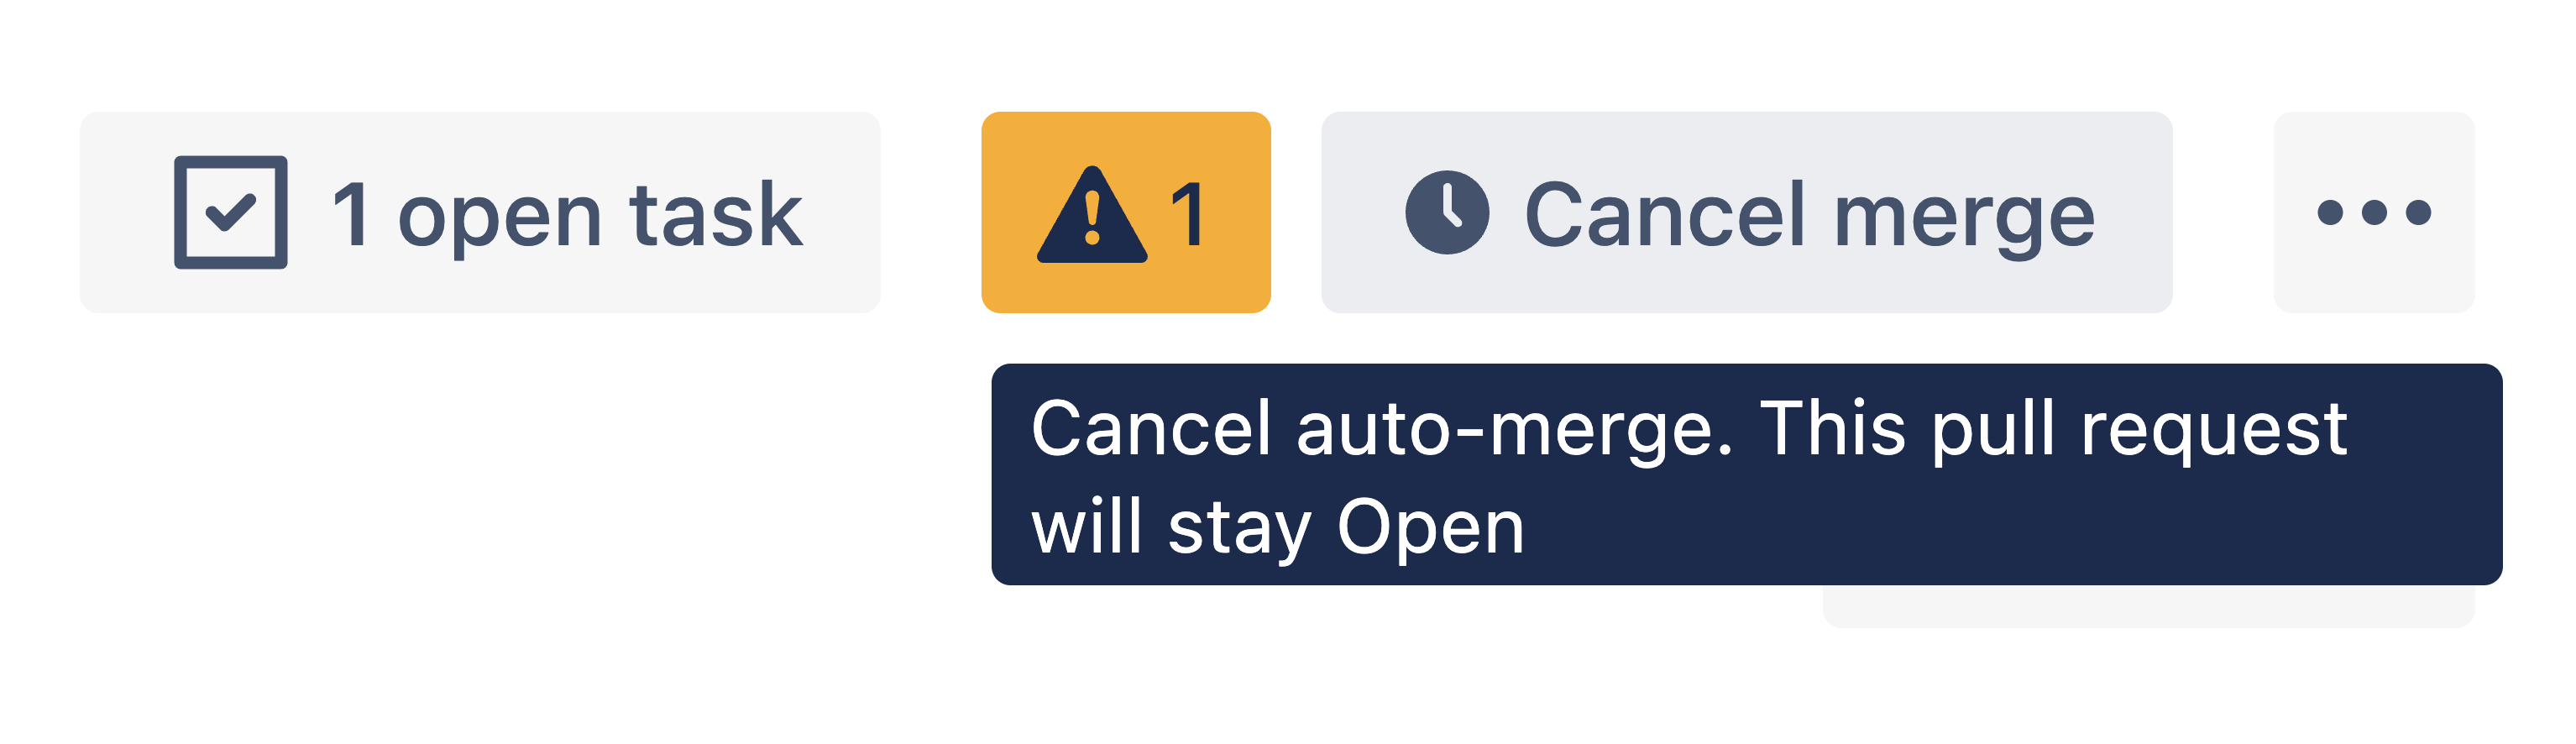 Cancel auto-merge